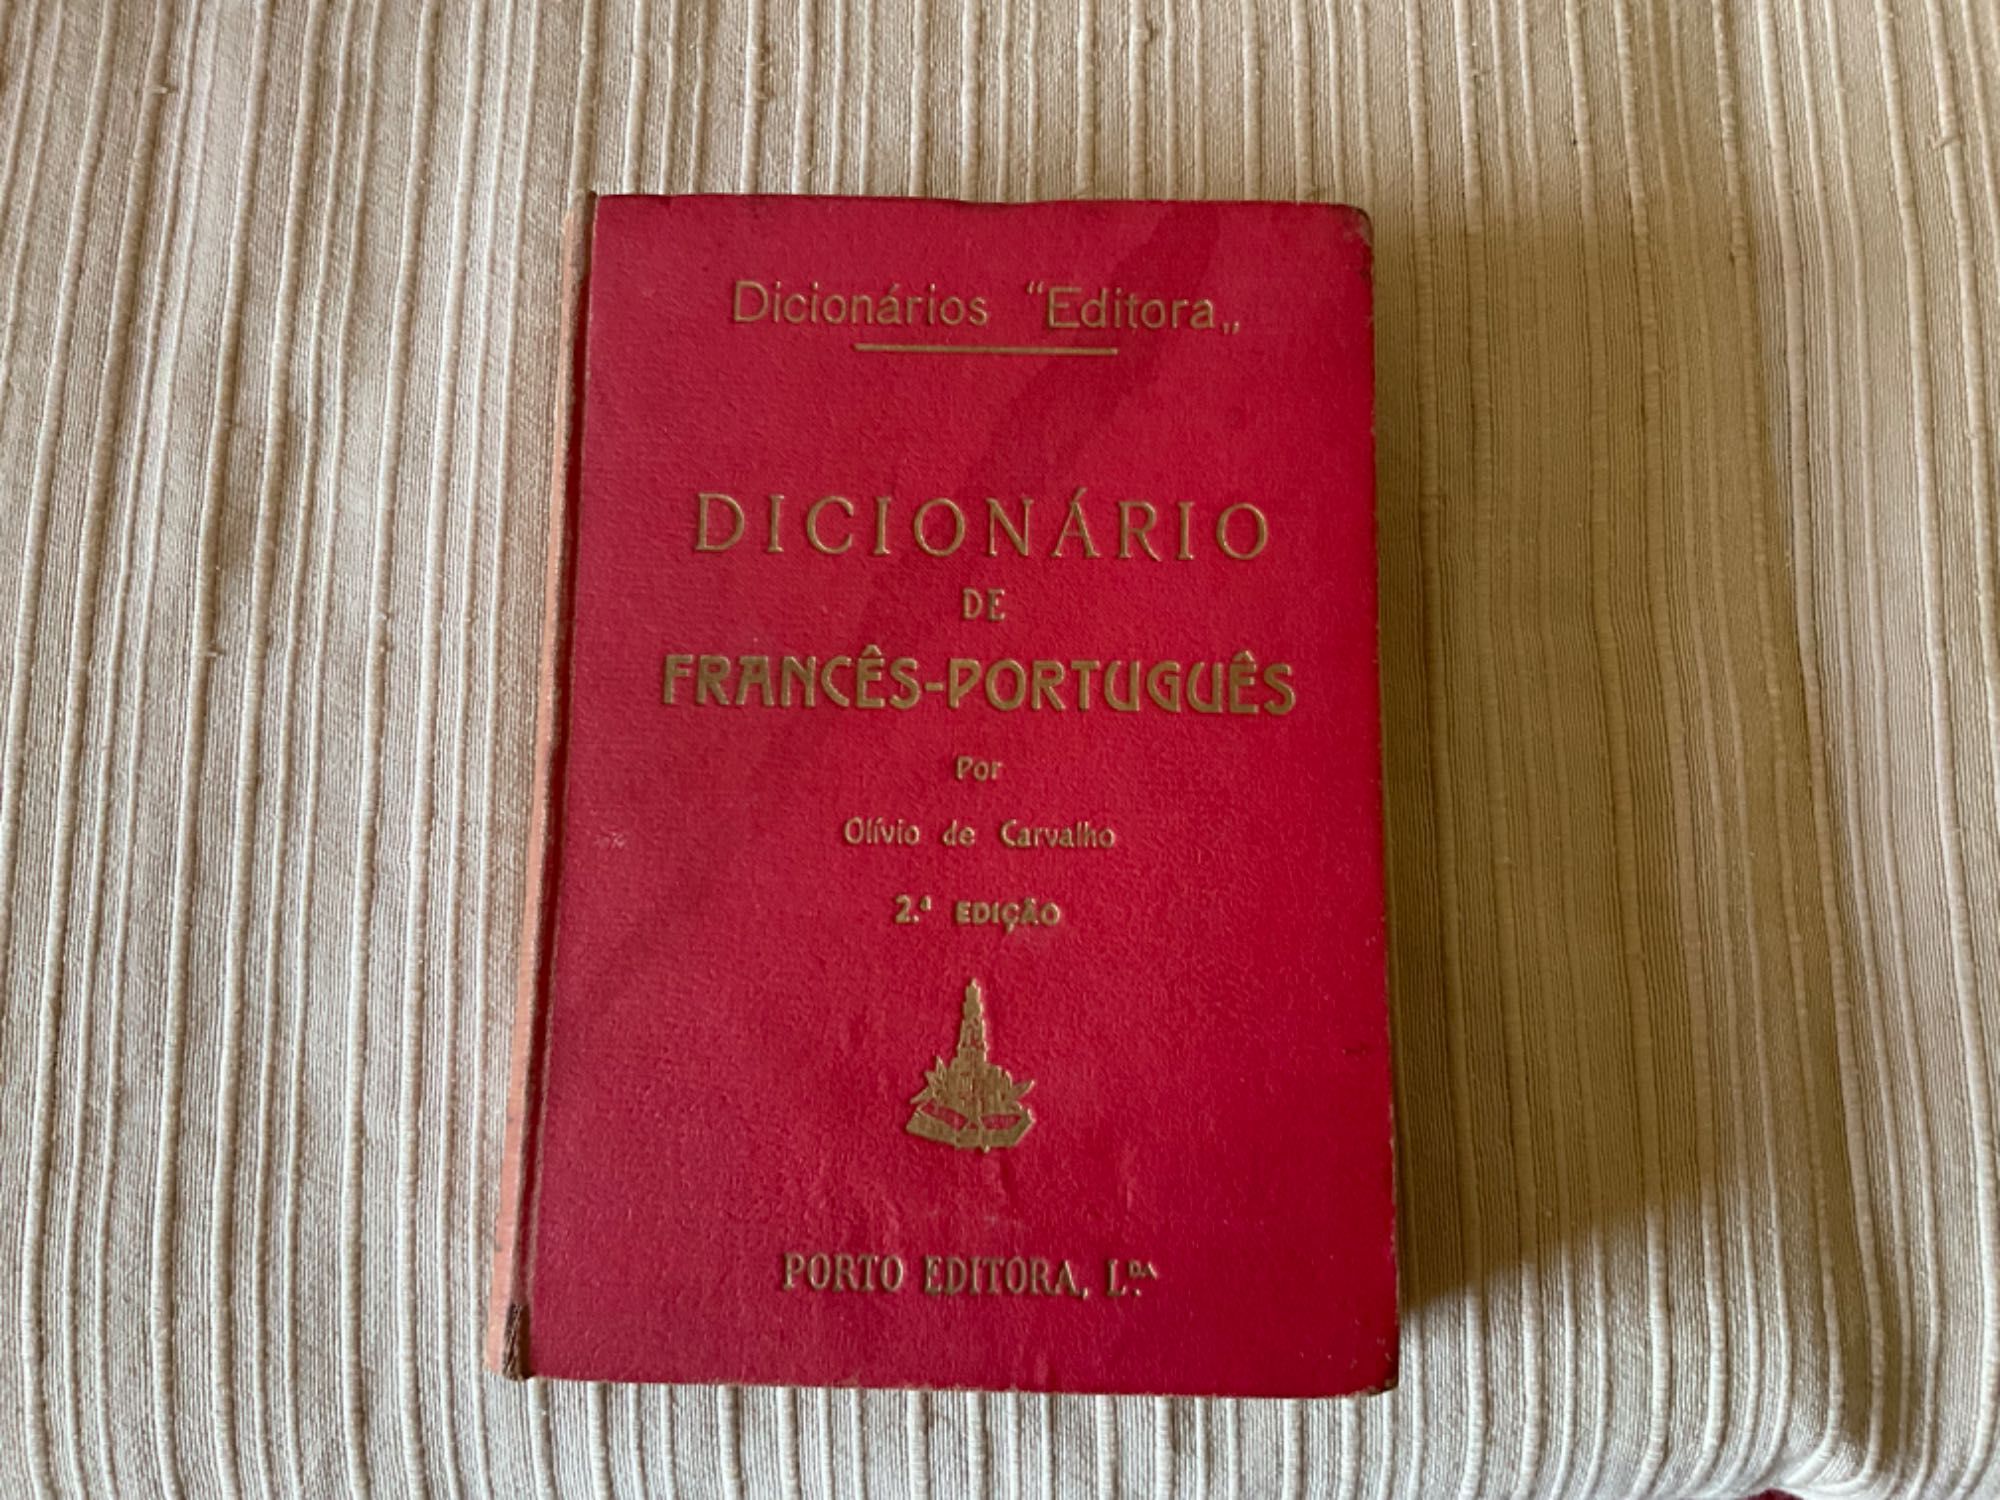 Dicionário Escolar da Ciência Novo, caderno, agualusa